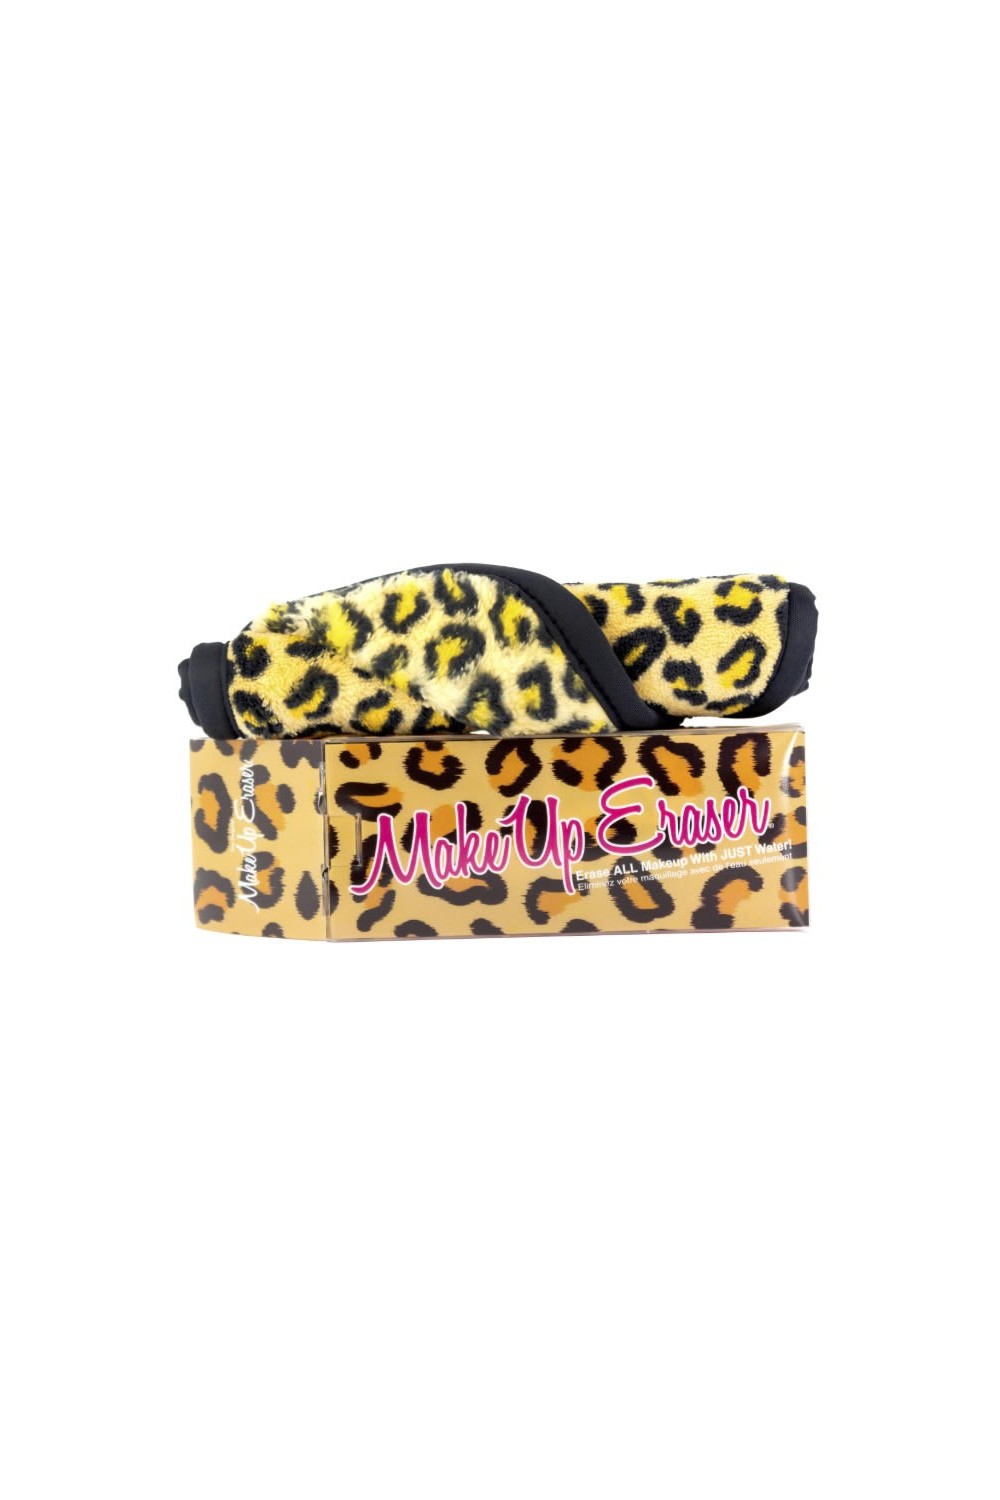 Makeup Eraser Cheetah